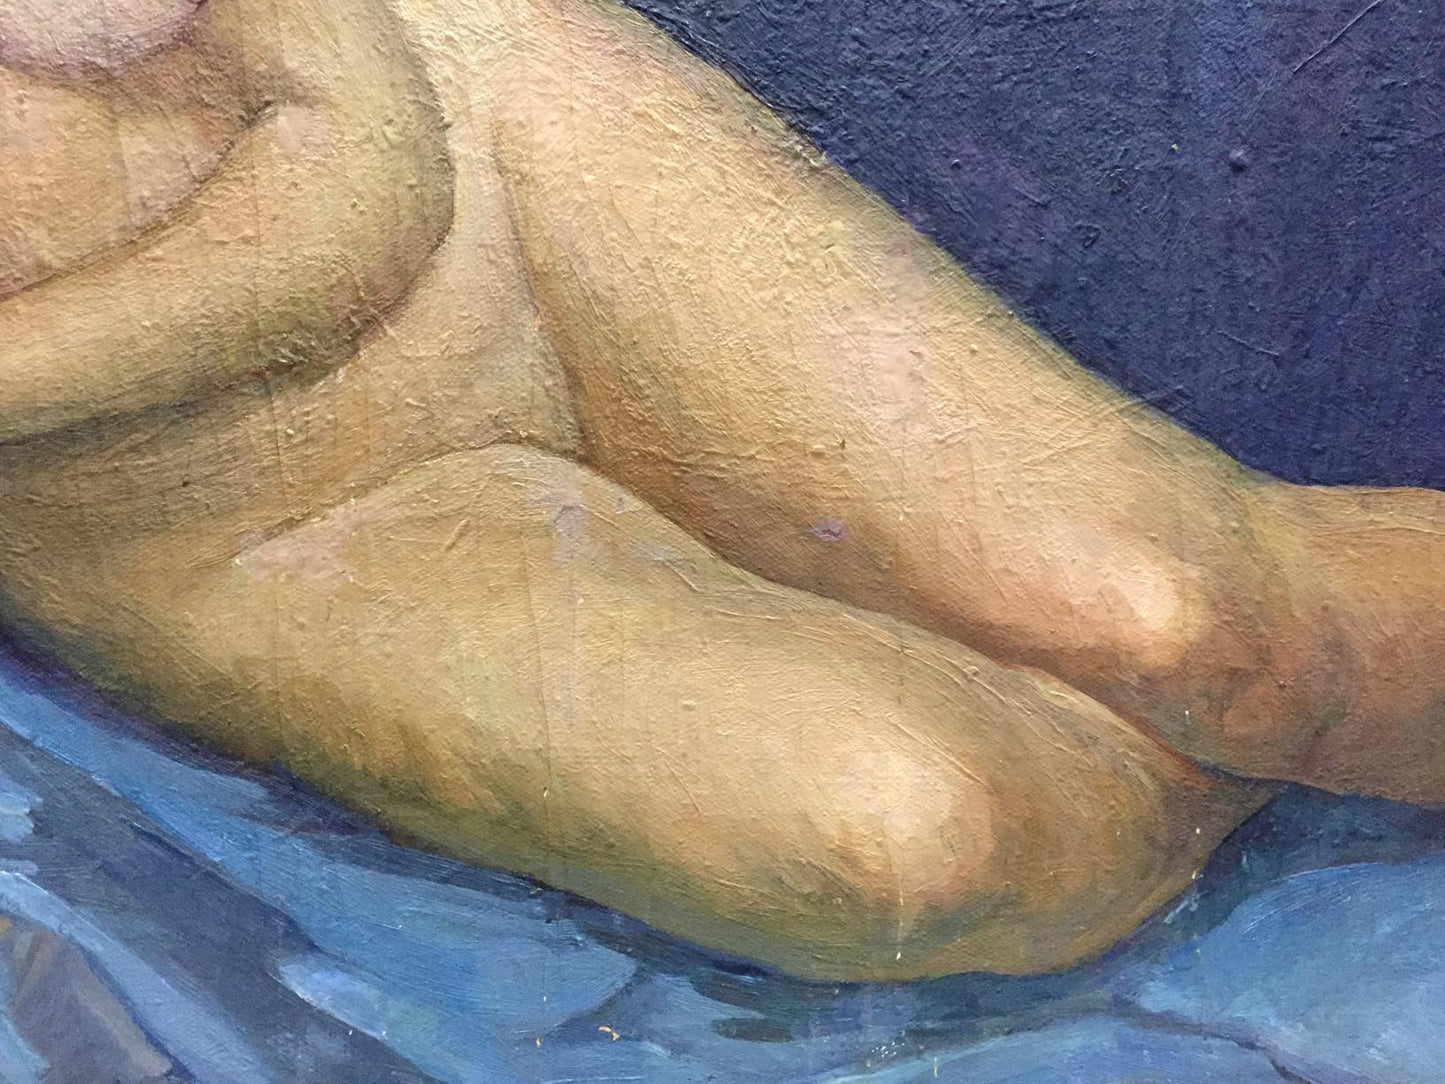 Oil Portrait Girl Naked